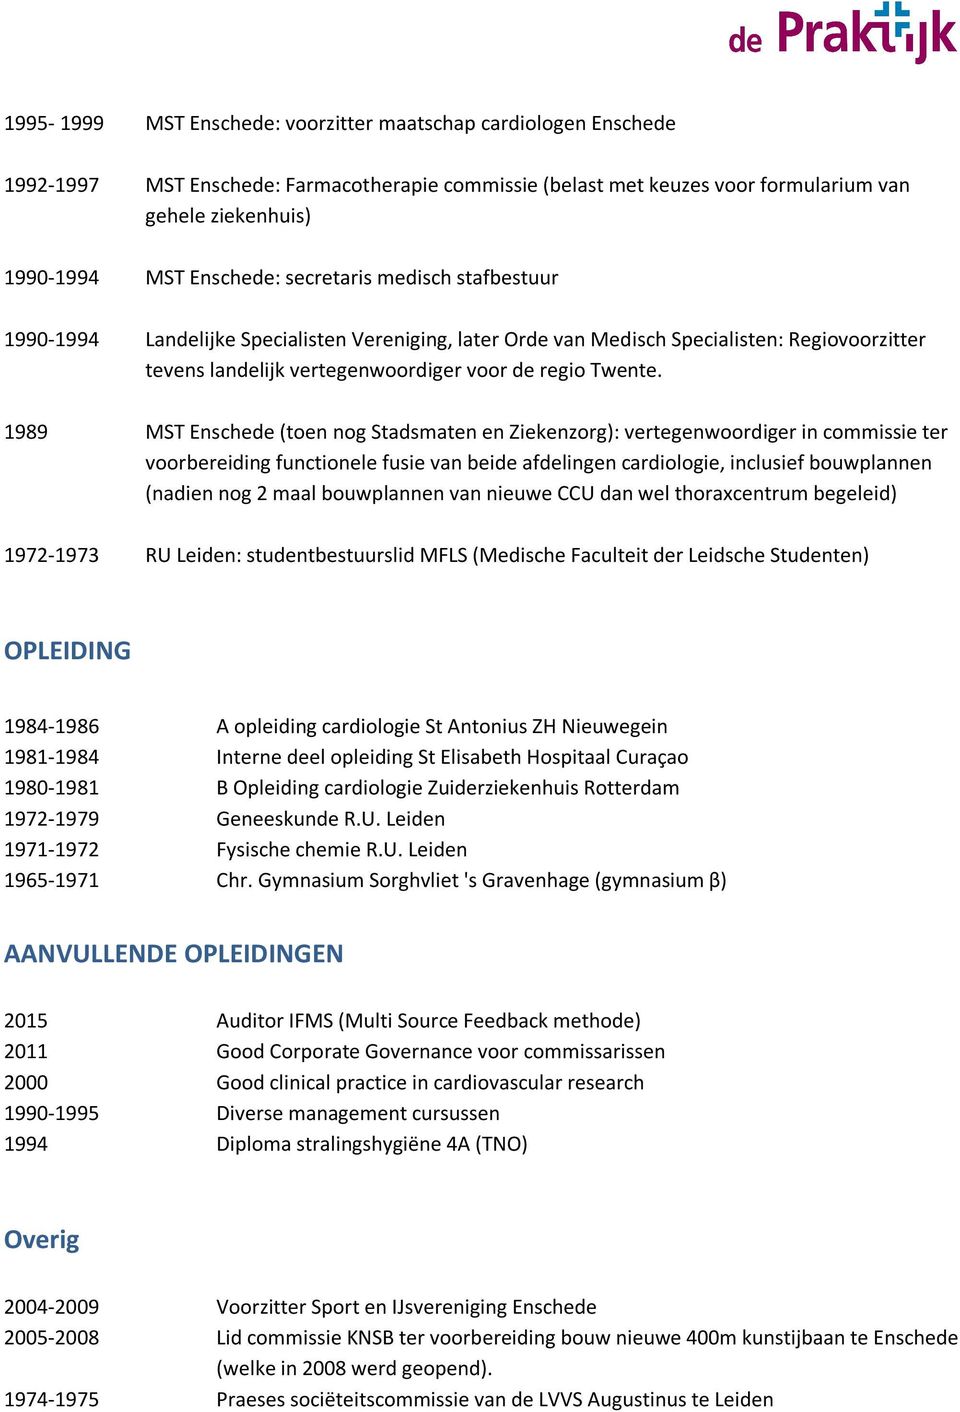 1989 MST Enschede (toen nog Stadsmaten en Ziekenzorg): vertegenwoordiger in commissie ter voorbereiding functionele fusie van beide afdelingen cardiologie, inclusief bouwplannen (nadien nog 2 maal